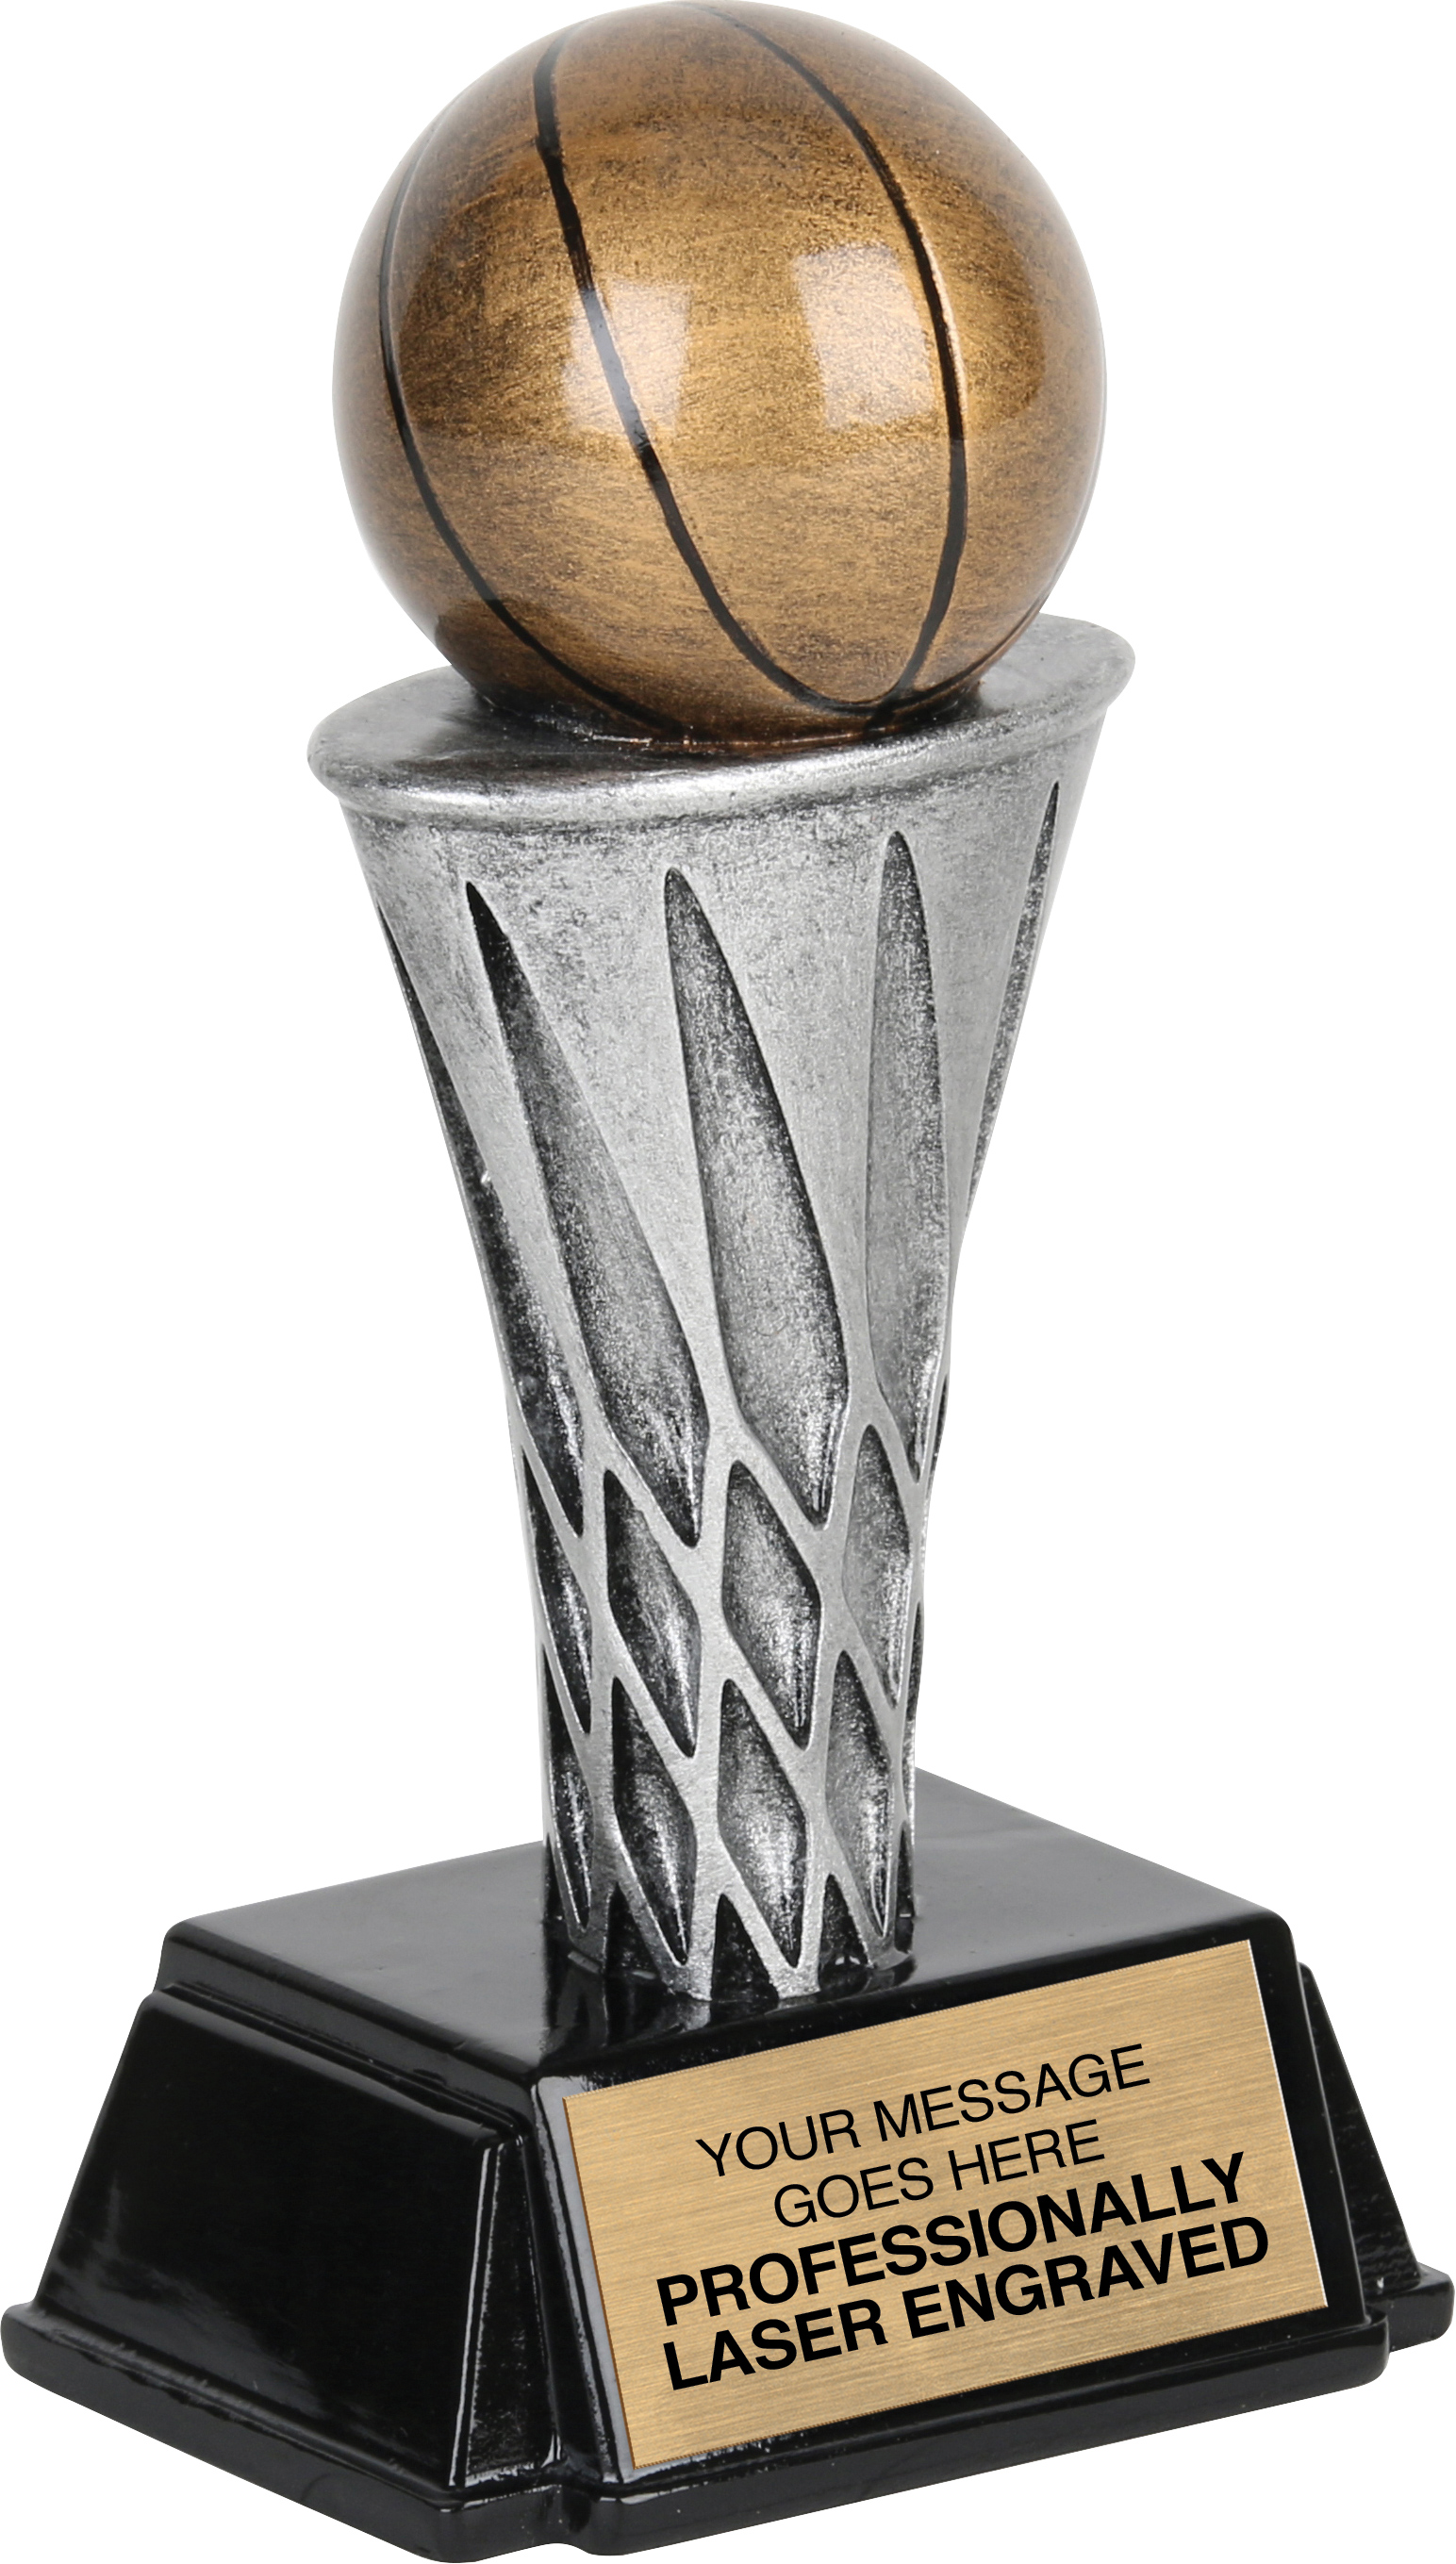 World Class Basketball Award - 6 inch